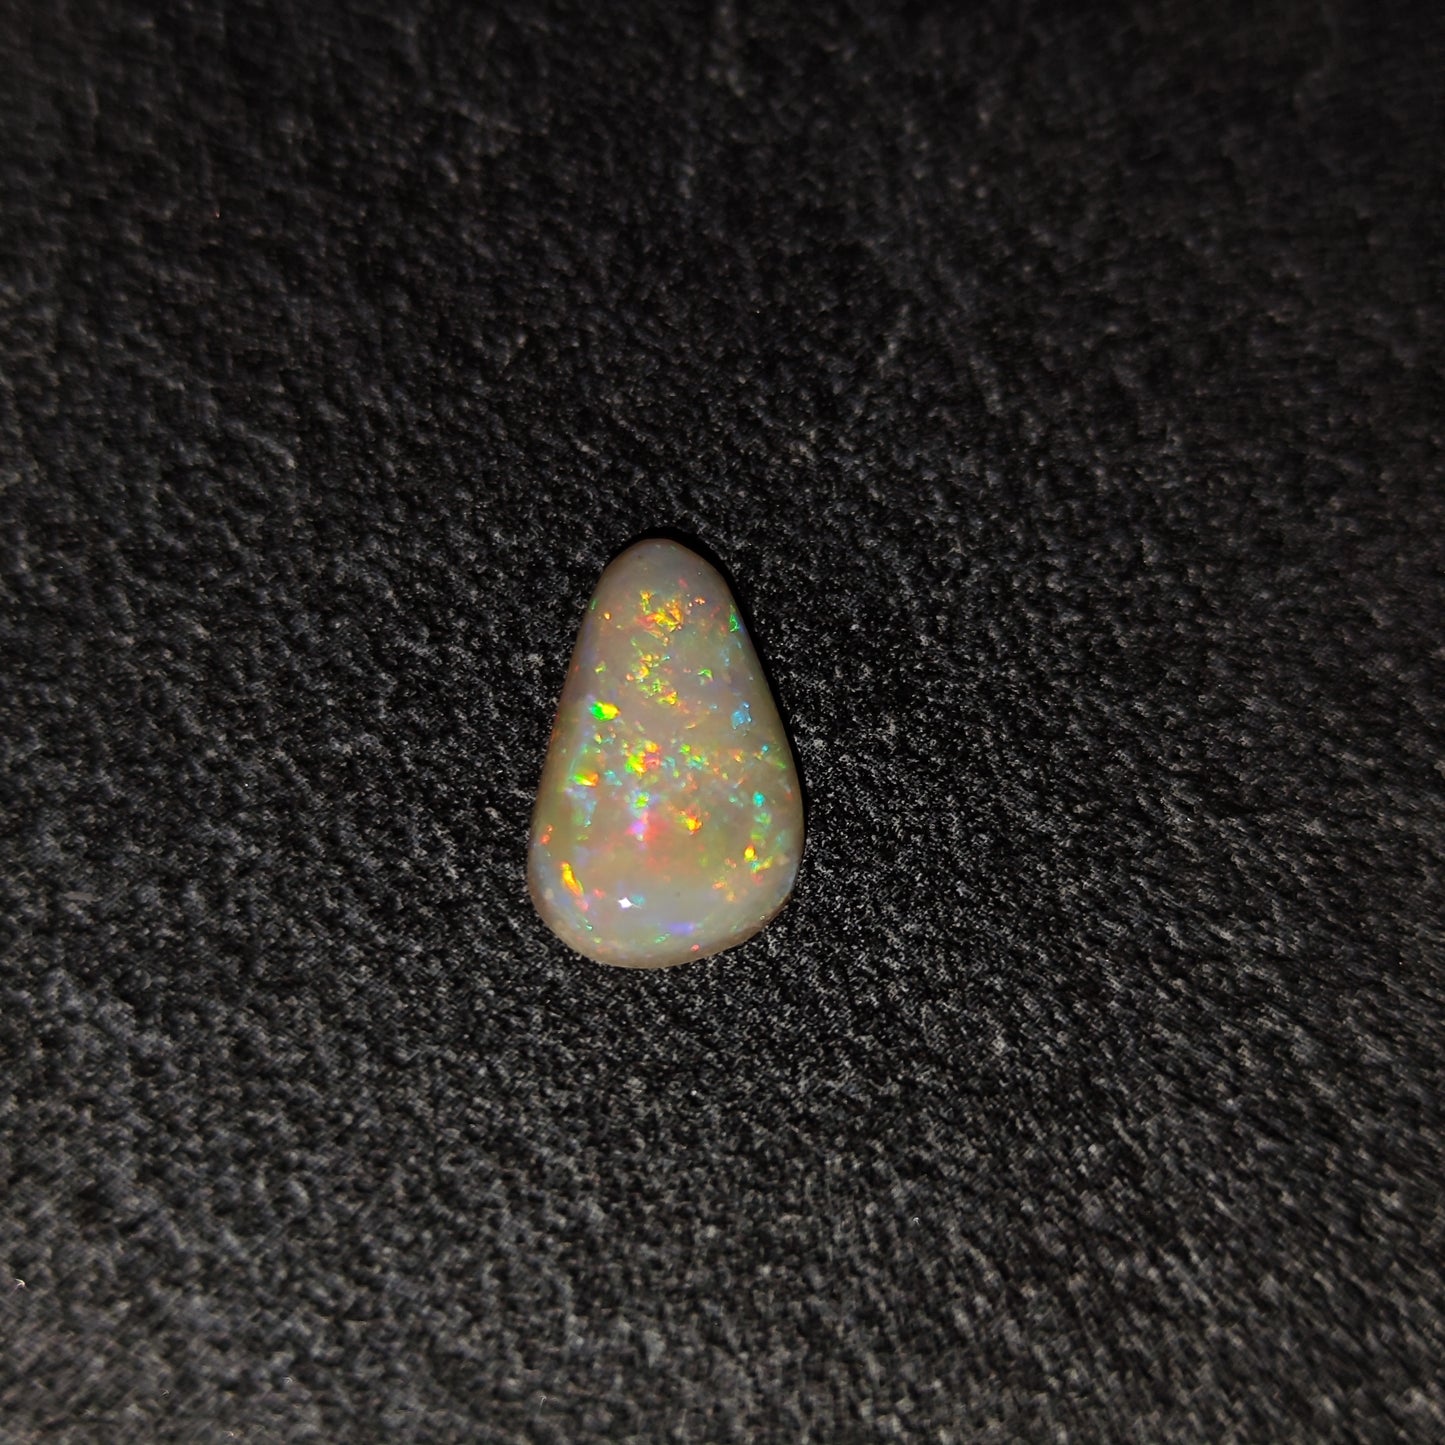 Opale laiteuse de Mintabie Australienne 2,75ct